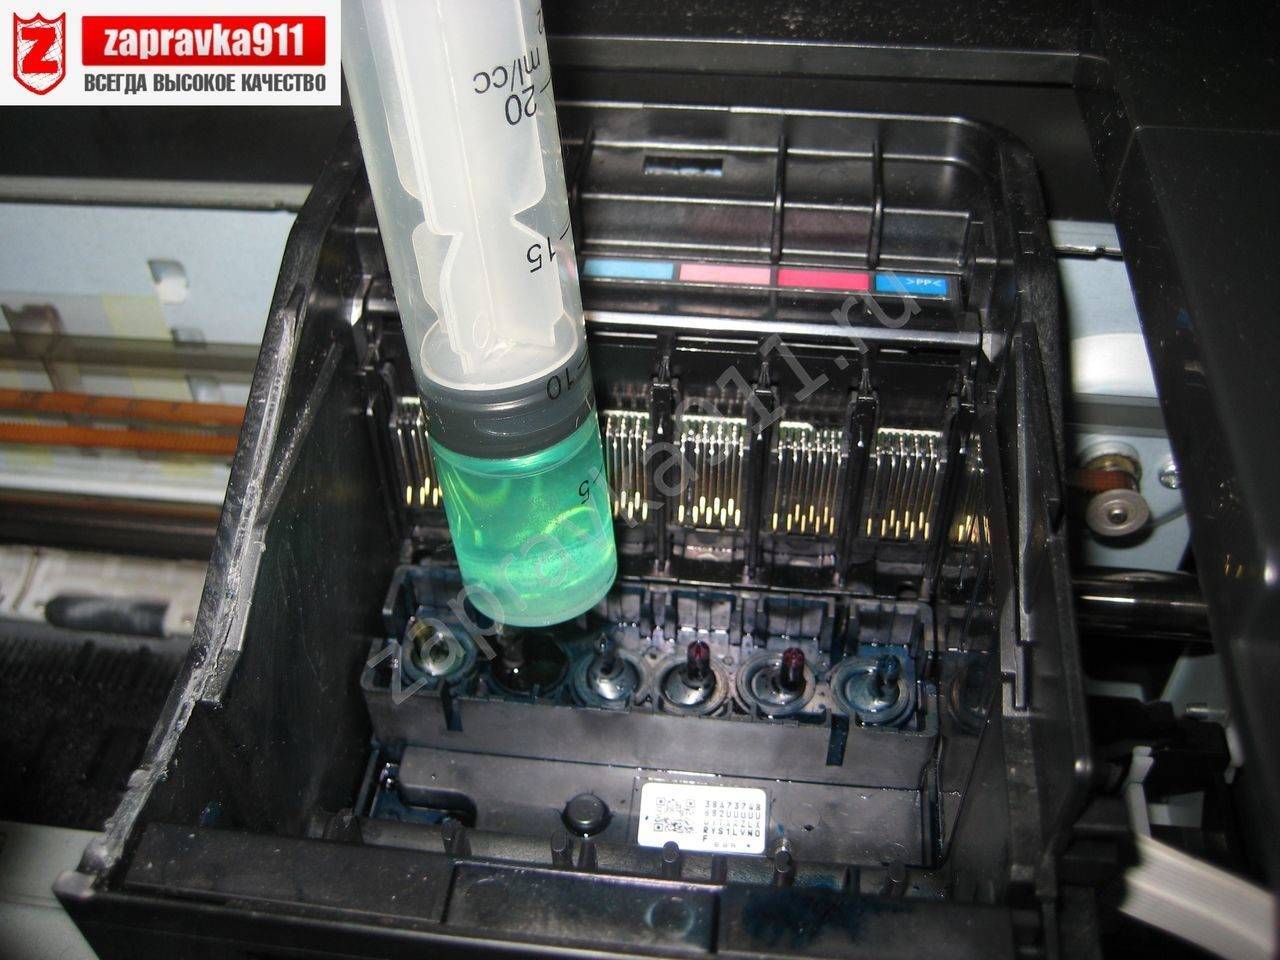 Как очистить печатную головку принтера | ichip.ru